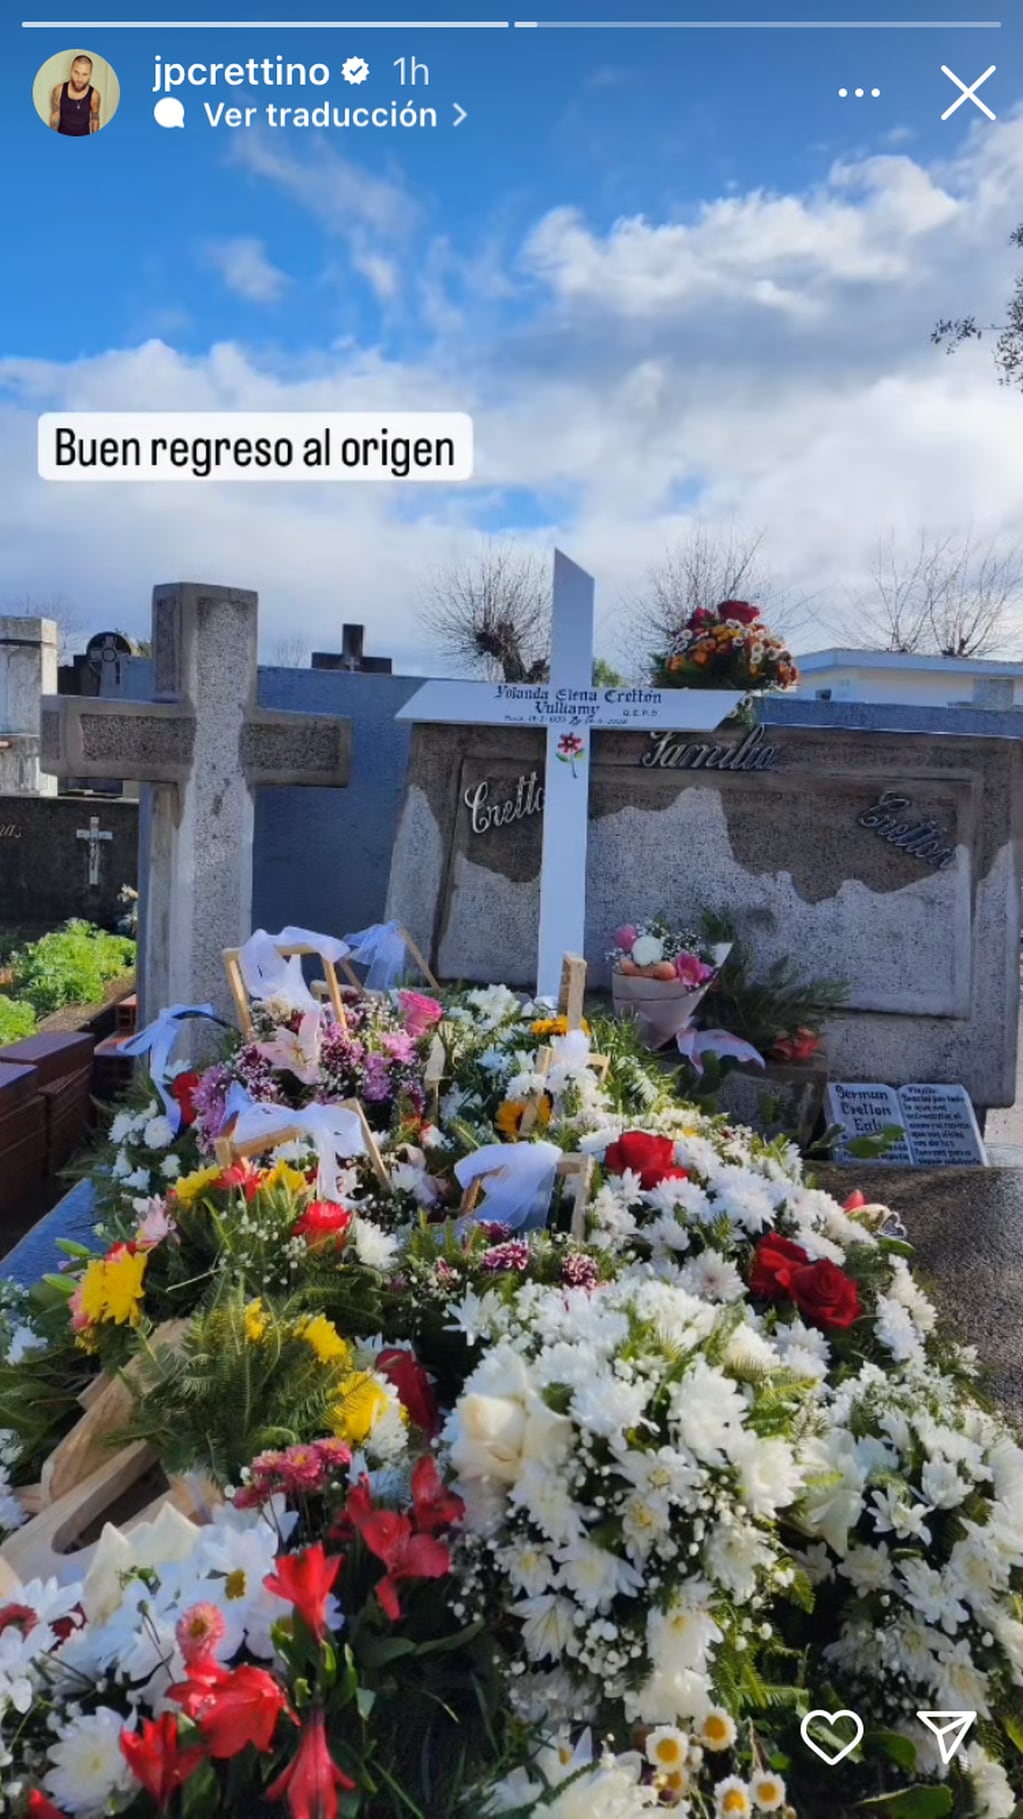 Jean Philippe Cretton compartió unos íntimos registros del funeral de su abuela.